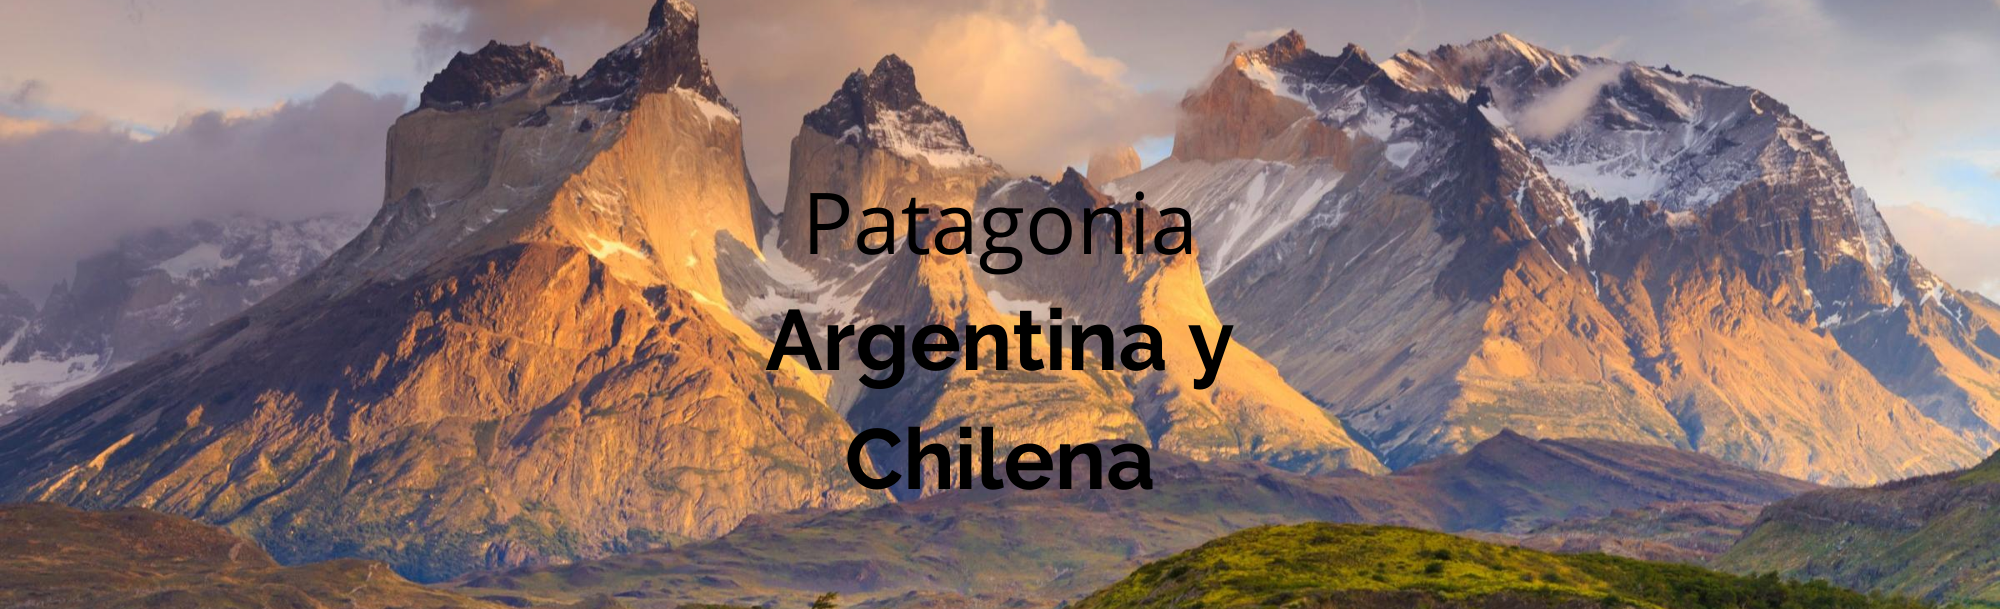 Patagonia Argentina y Chilena